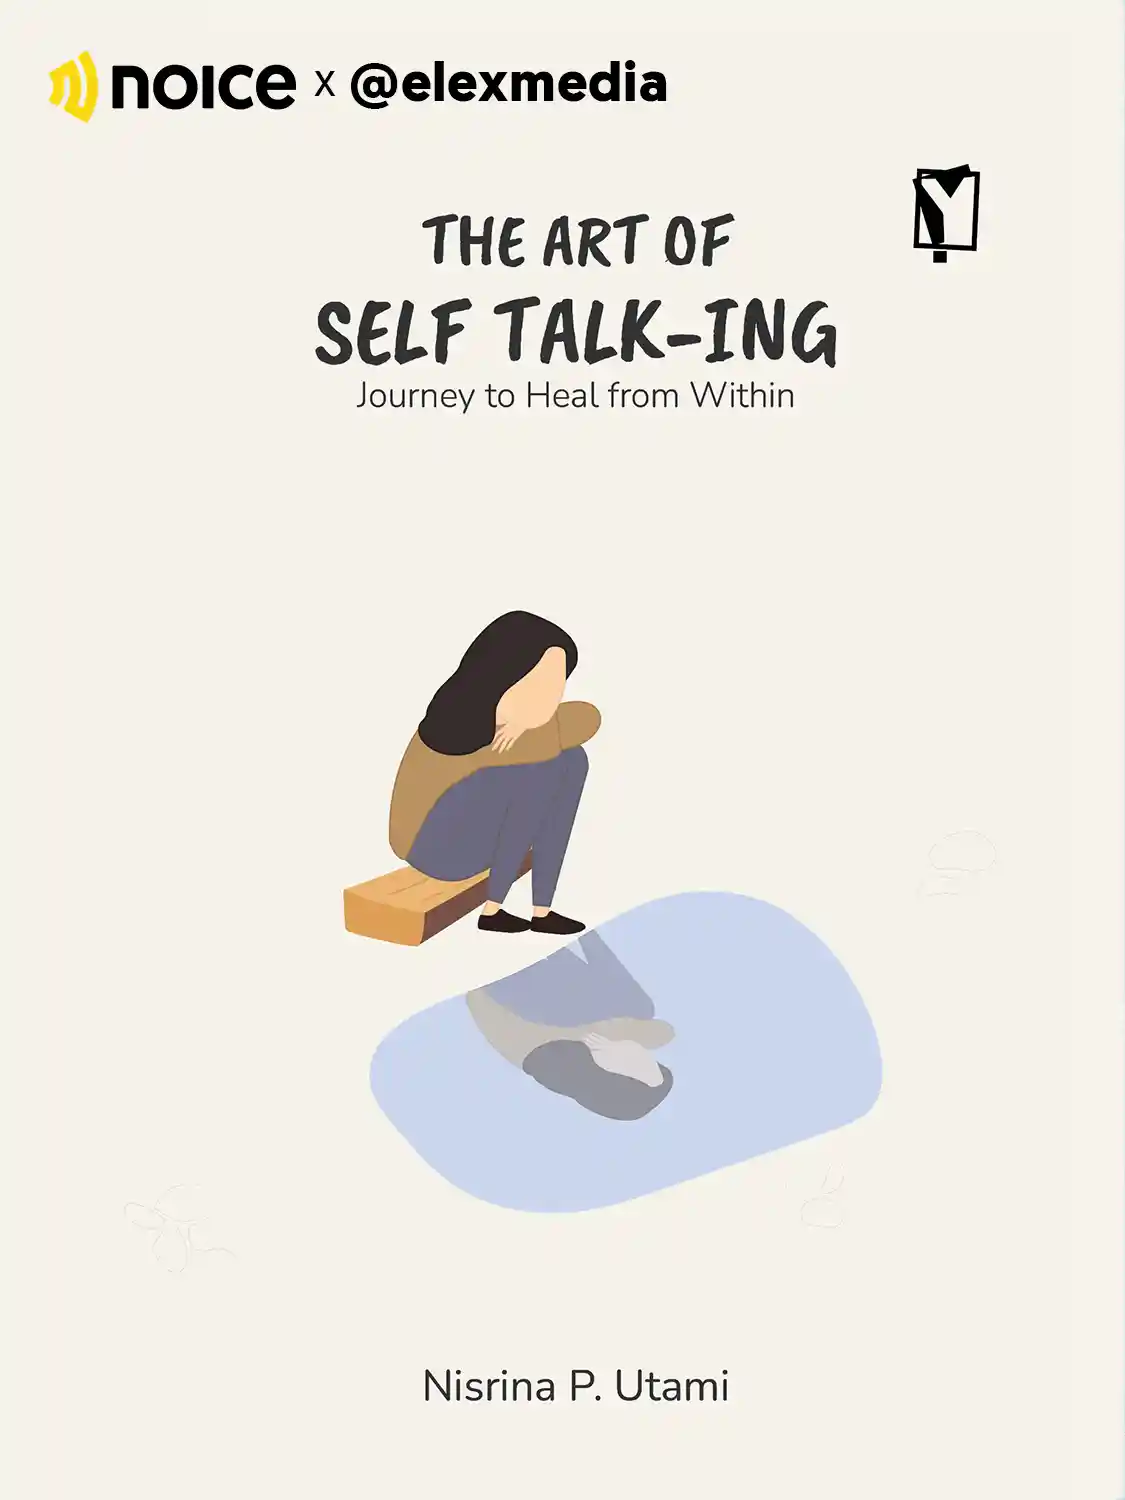 #4 Self-talk untuk cari tahu kebutuhan diri.